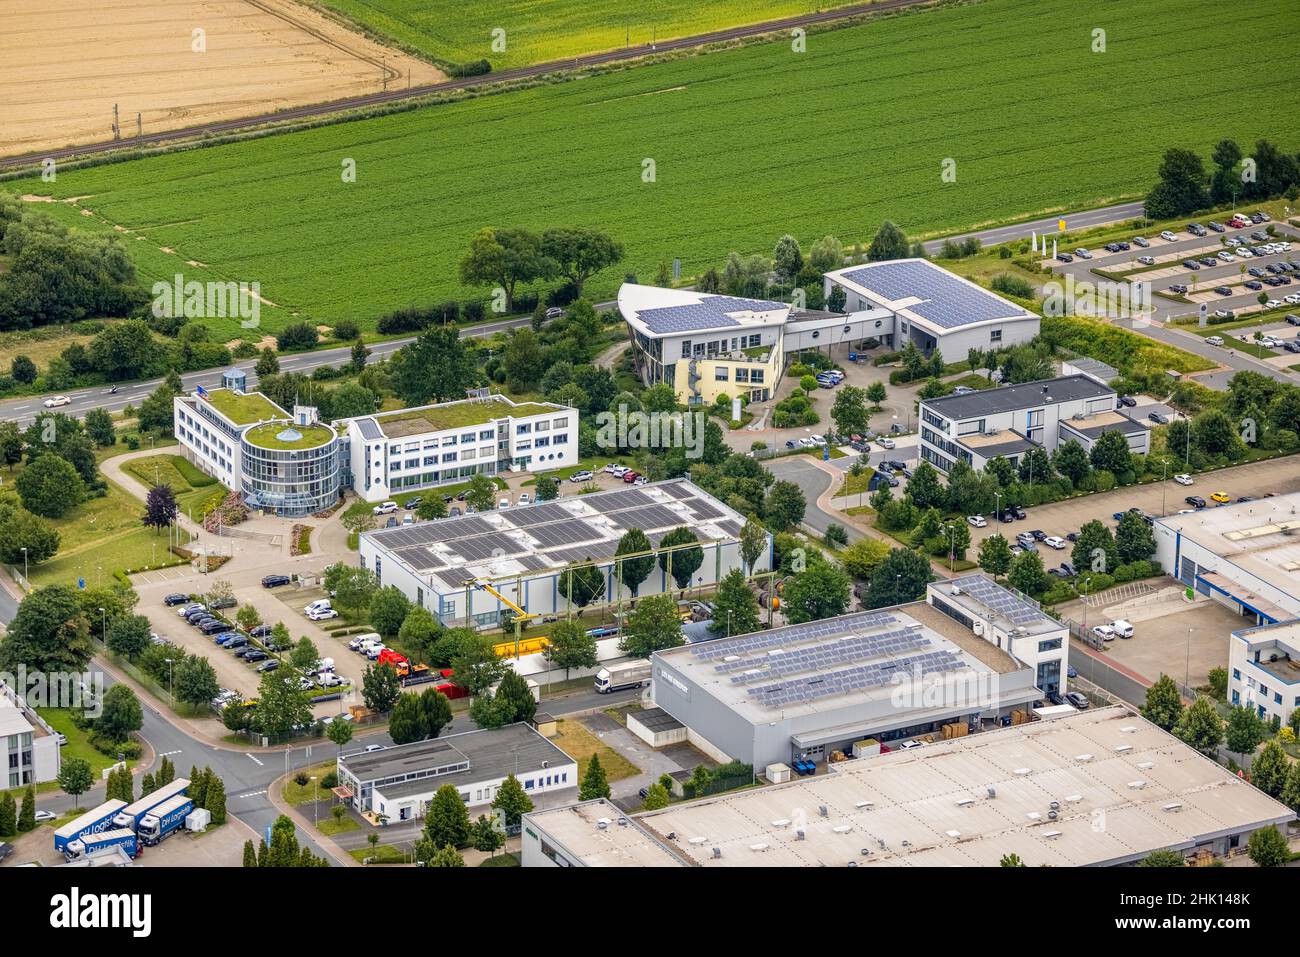 Aerial photograph, CompanyBuilding PVS / Westfalen-Süd rkV Ärztliche Abrechnungen, Stadtwerke Unna, Uelzen, Unna, Ruhrgebiet, Nordrhein-Westfalen, Ger Stock Photo